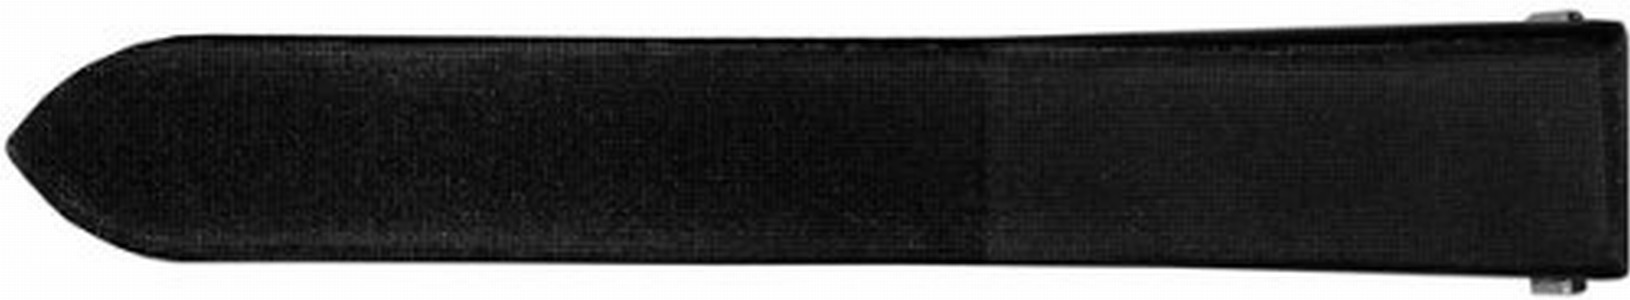 Cartier Black Satin Strap Watch # KD93XW73